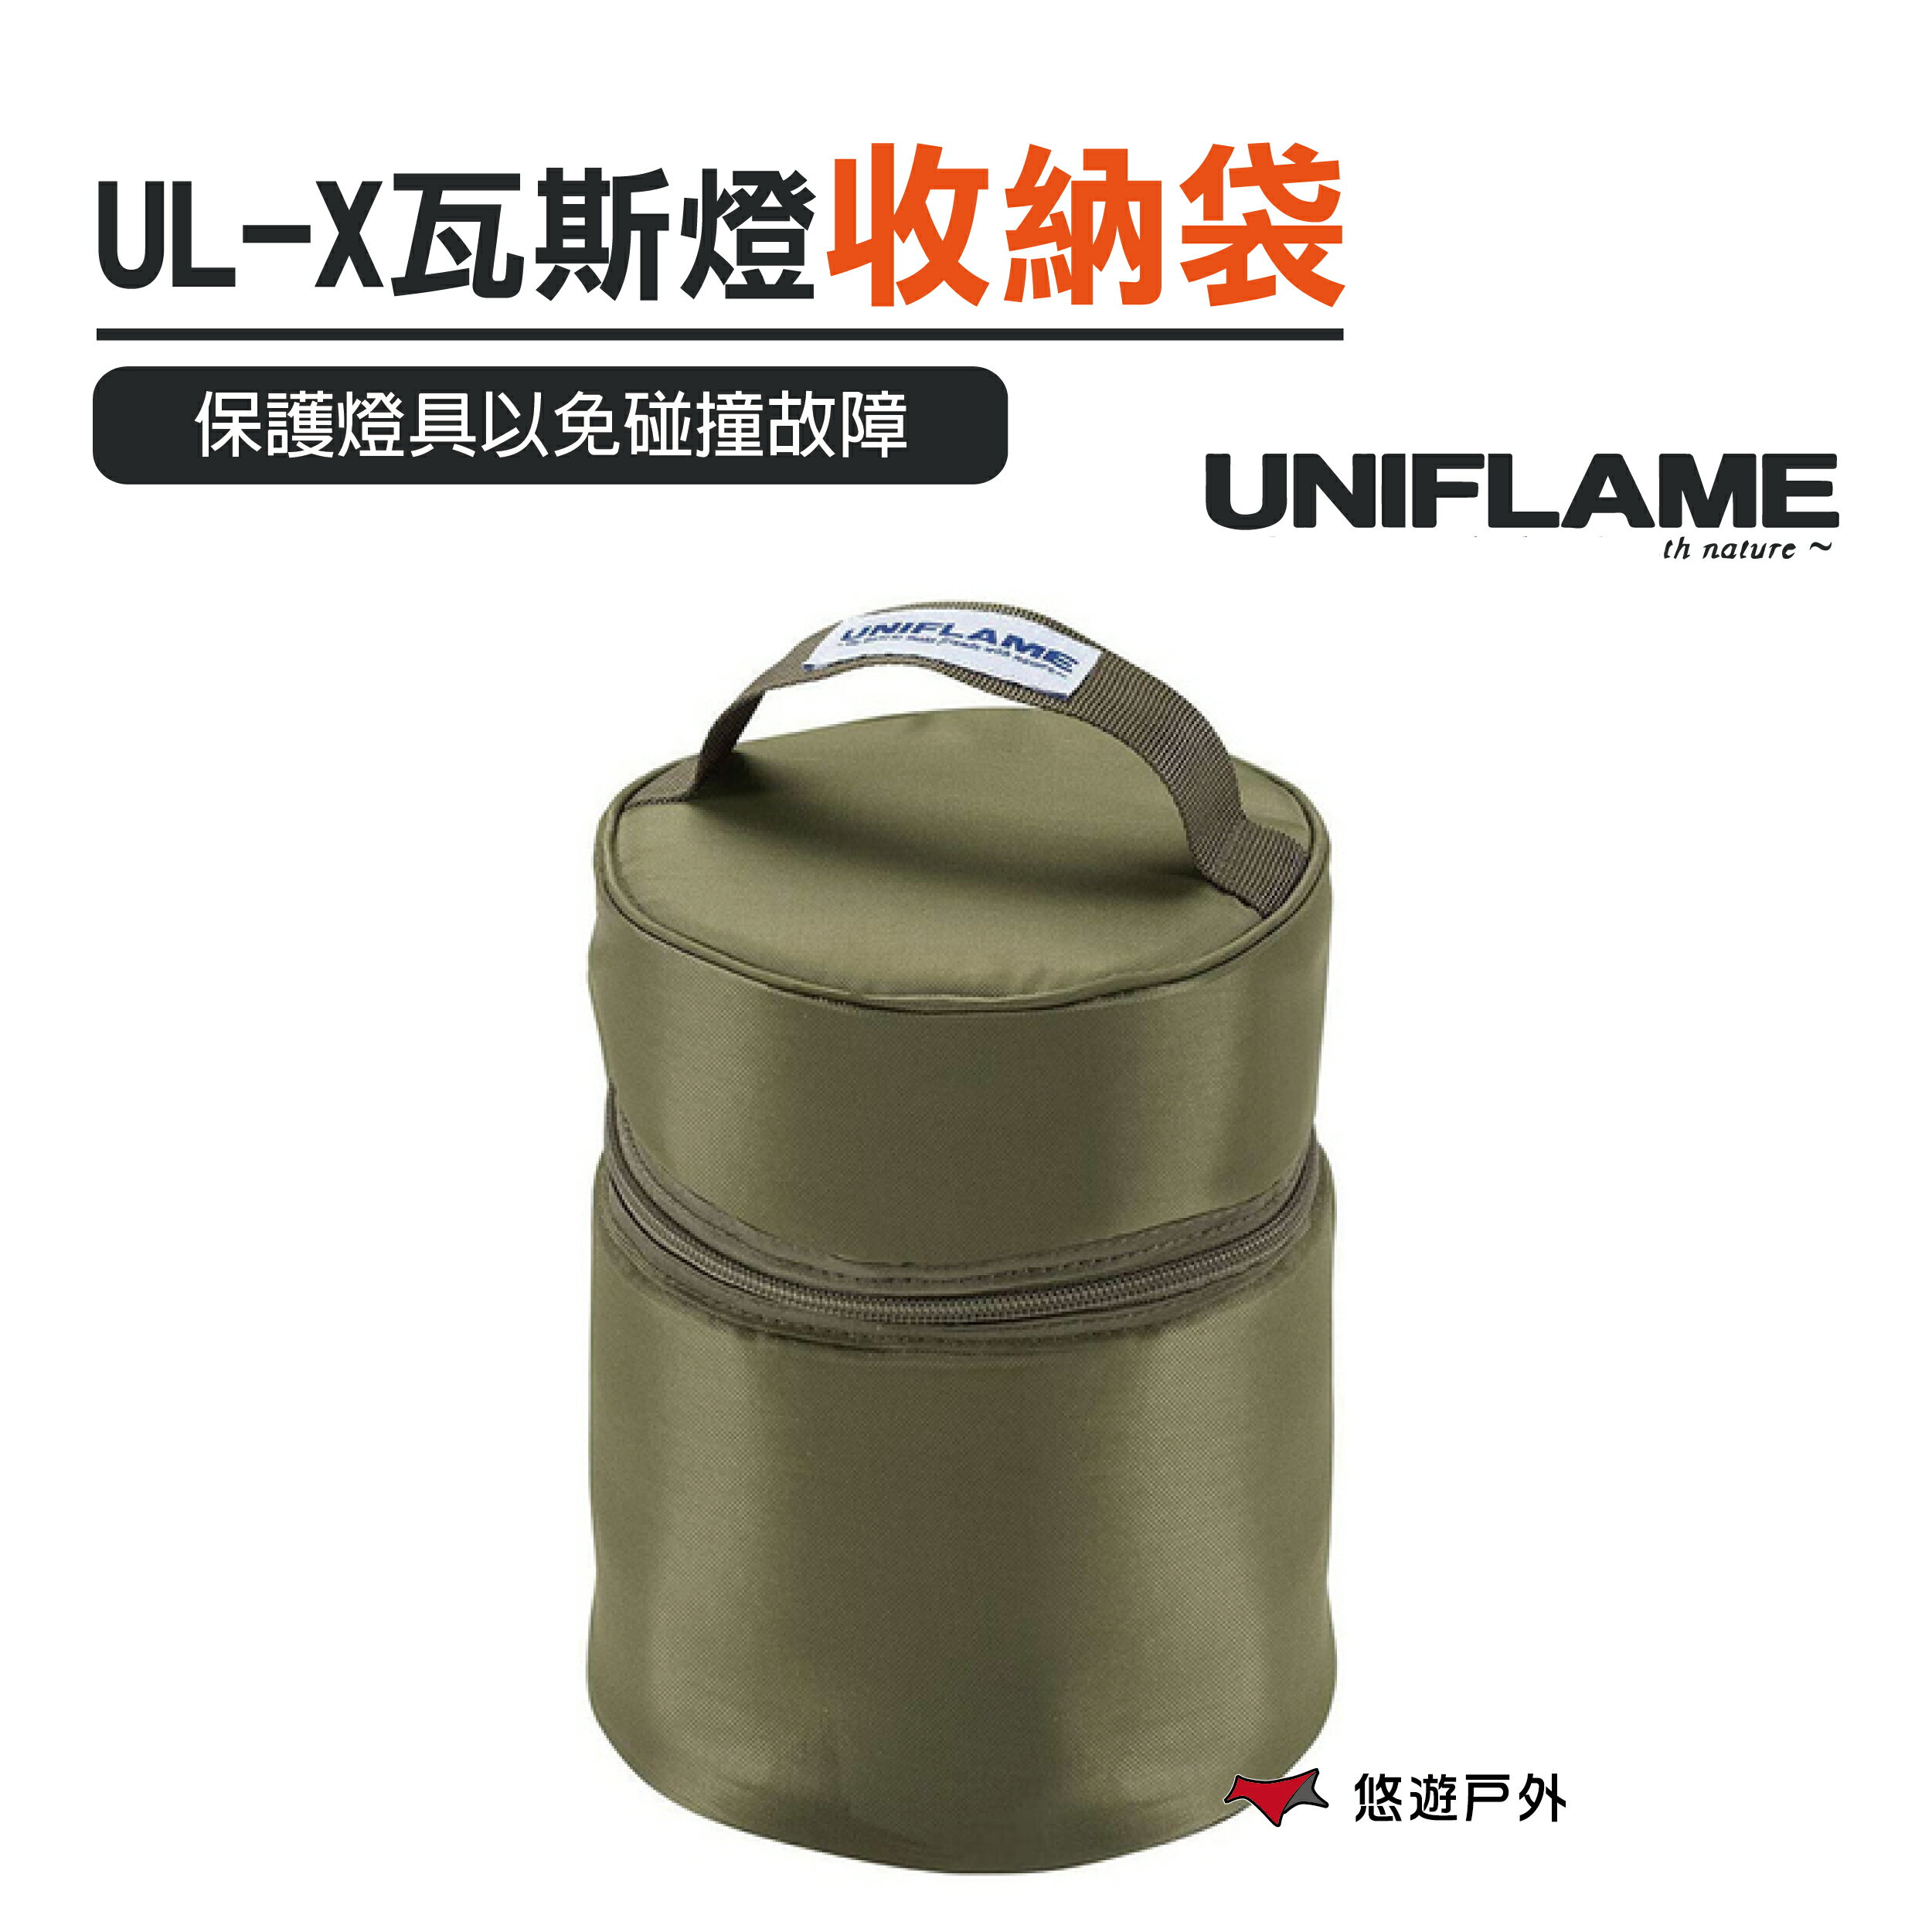 【公司貨】日本UNIFLAME UL-X卡式瓦斯燈 專用收納袋 軍綠【悠遊戶外】